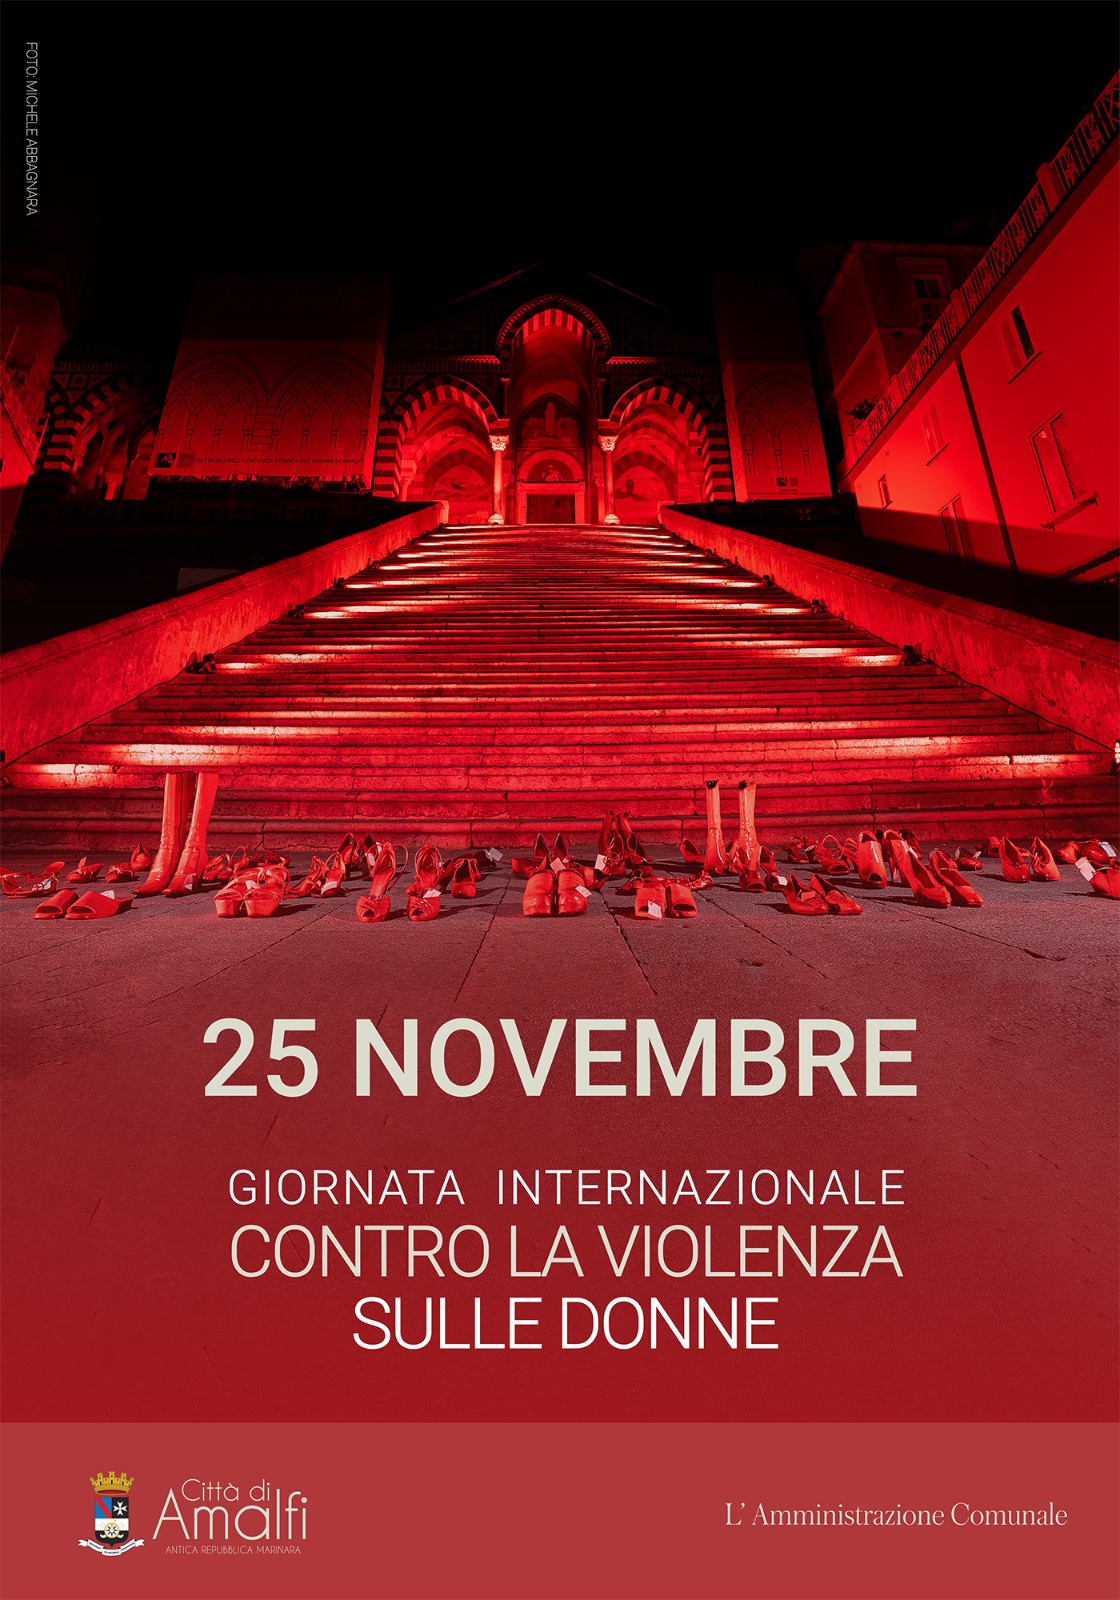 Amalfi: Duomo in rosso contro violenza sulle donne